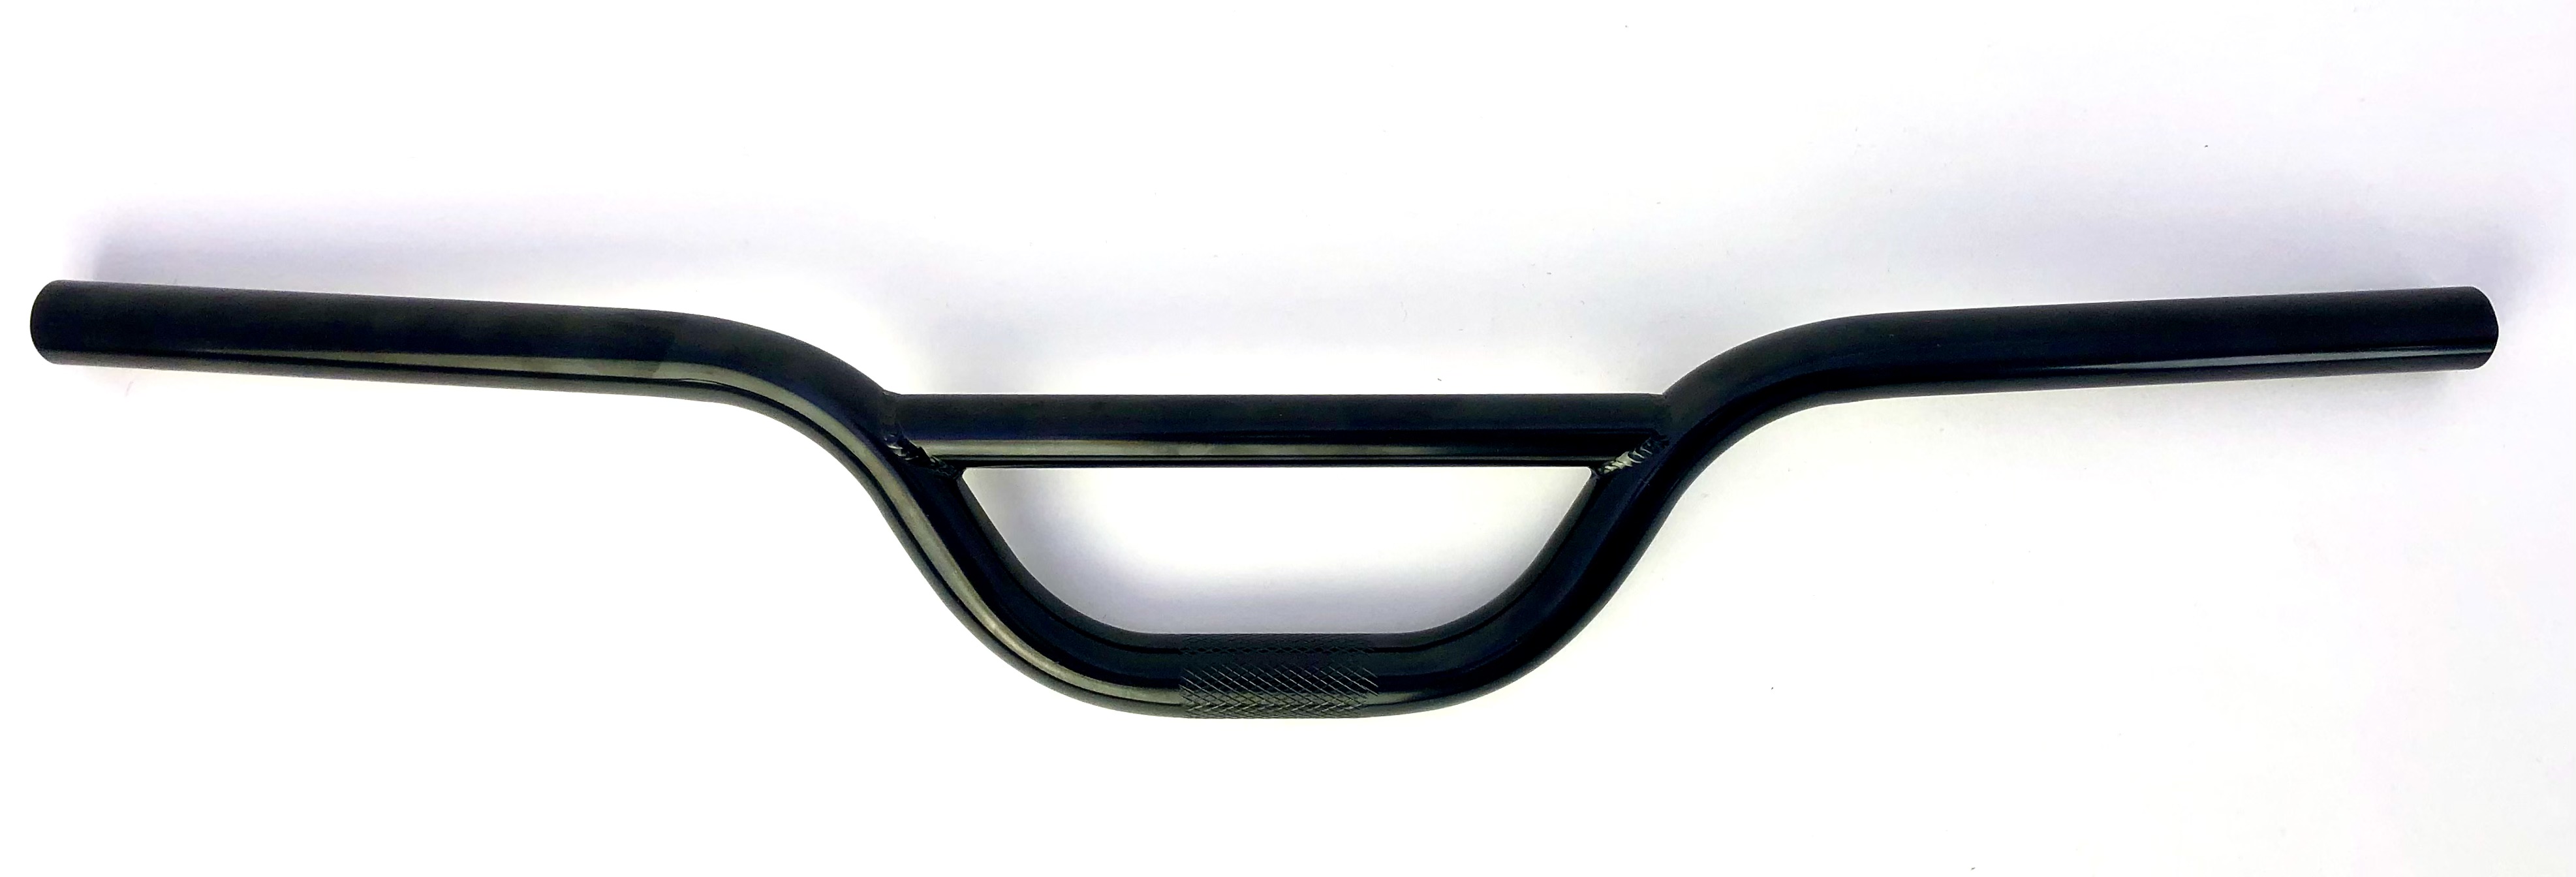 Flat 2 Cross - manubrio largo e piatto in nero semilucido forma BMX